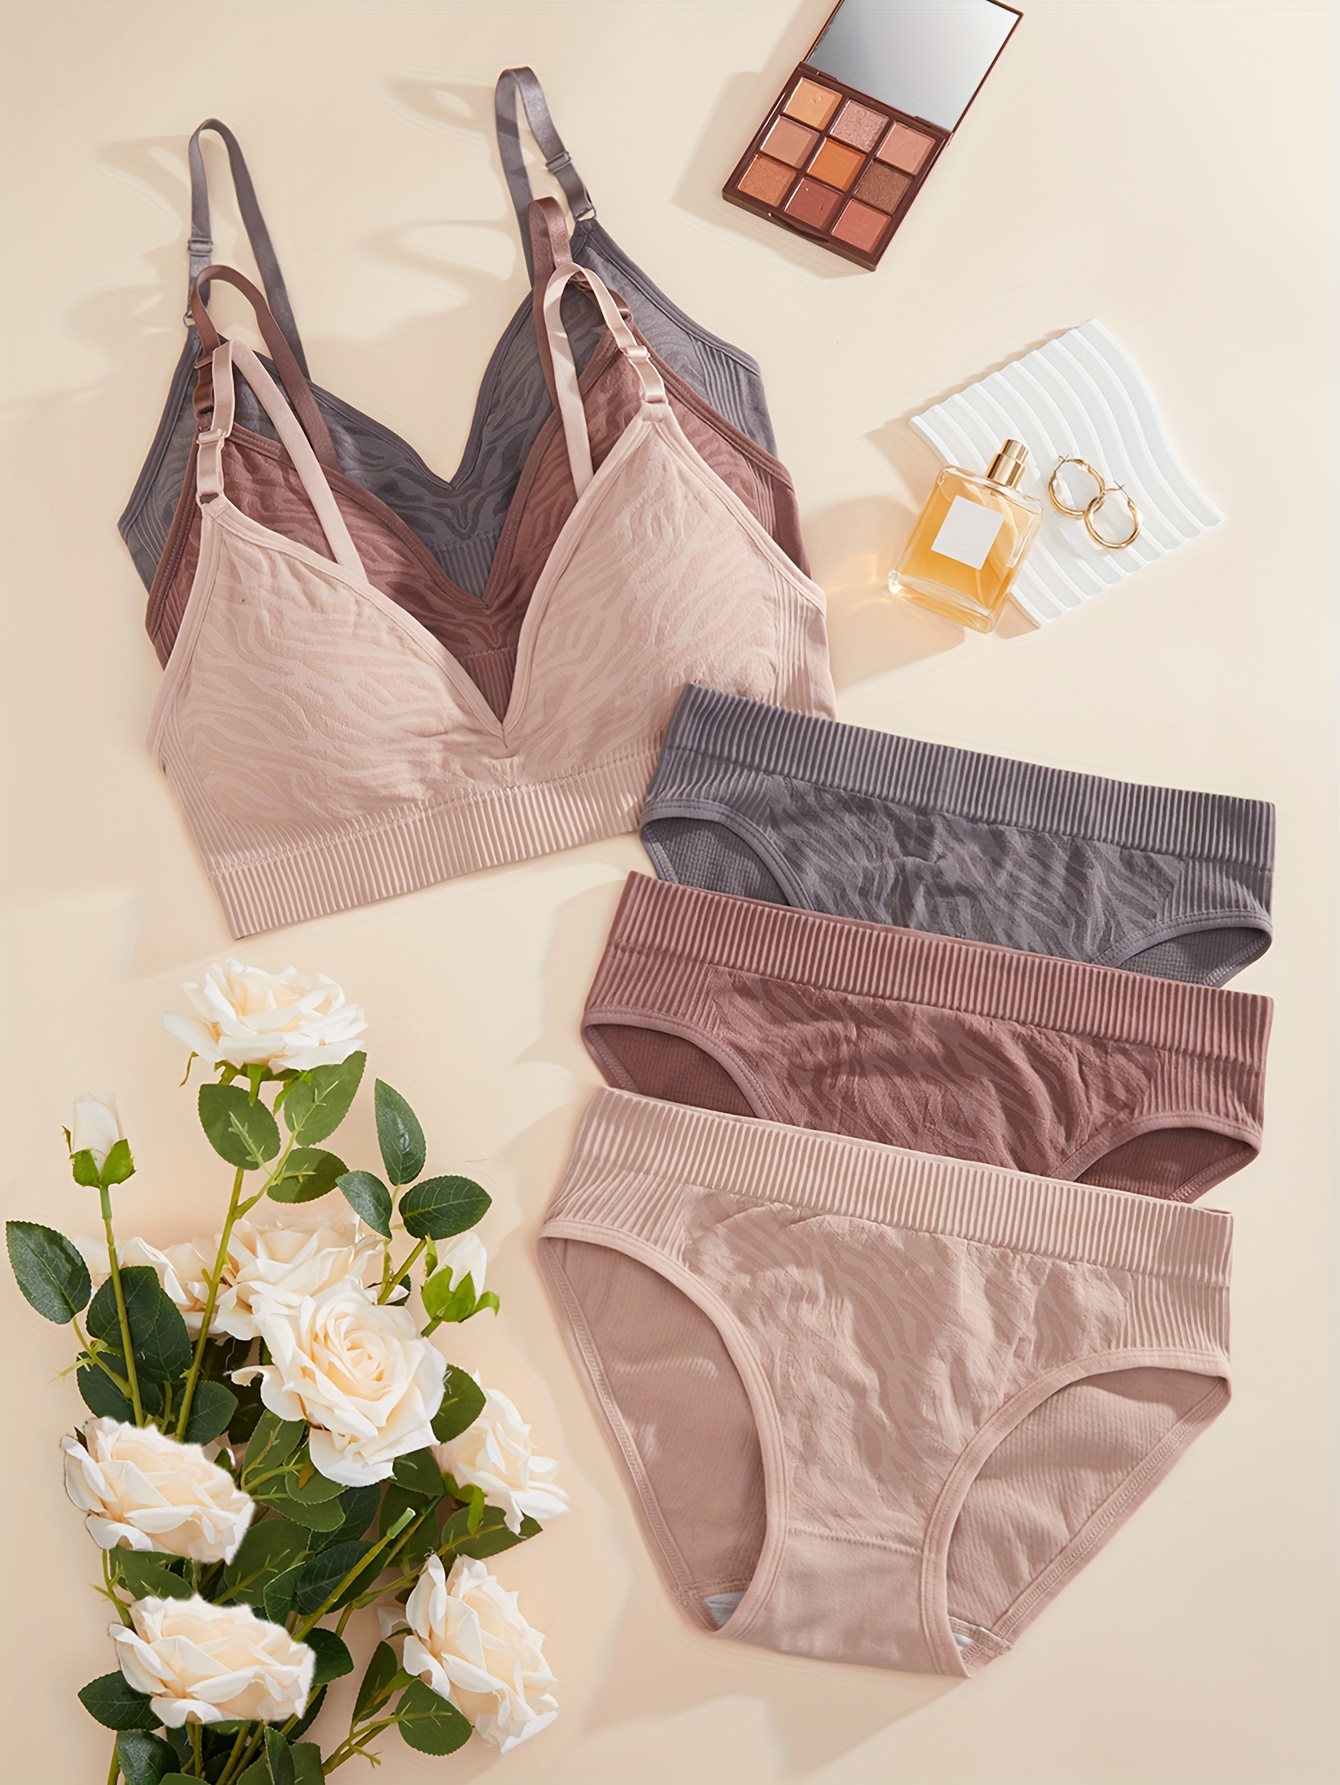 3 Sets Contrast Lace Bra & Panties, Wireless Bra & Letter Tape Panties  Lingerie Set, Women's Lingerie & Underwear